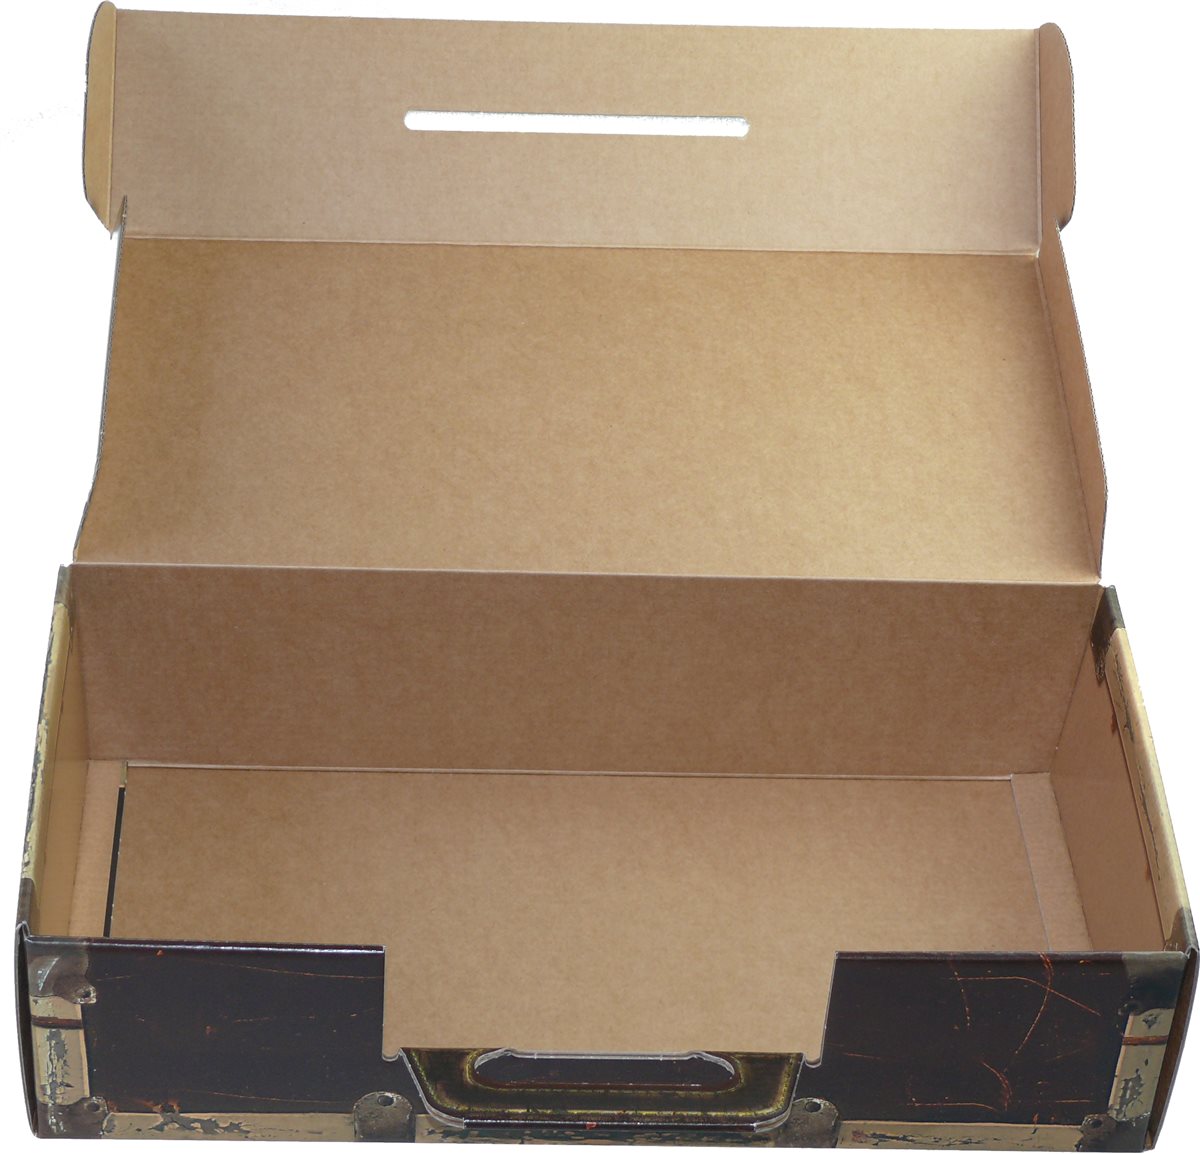 kleiner Trage Karton "Koffer" in Holzoptik - WK 1er - Weinkoffer Weinkarton Box Truhe Verpackung Geschenke
